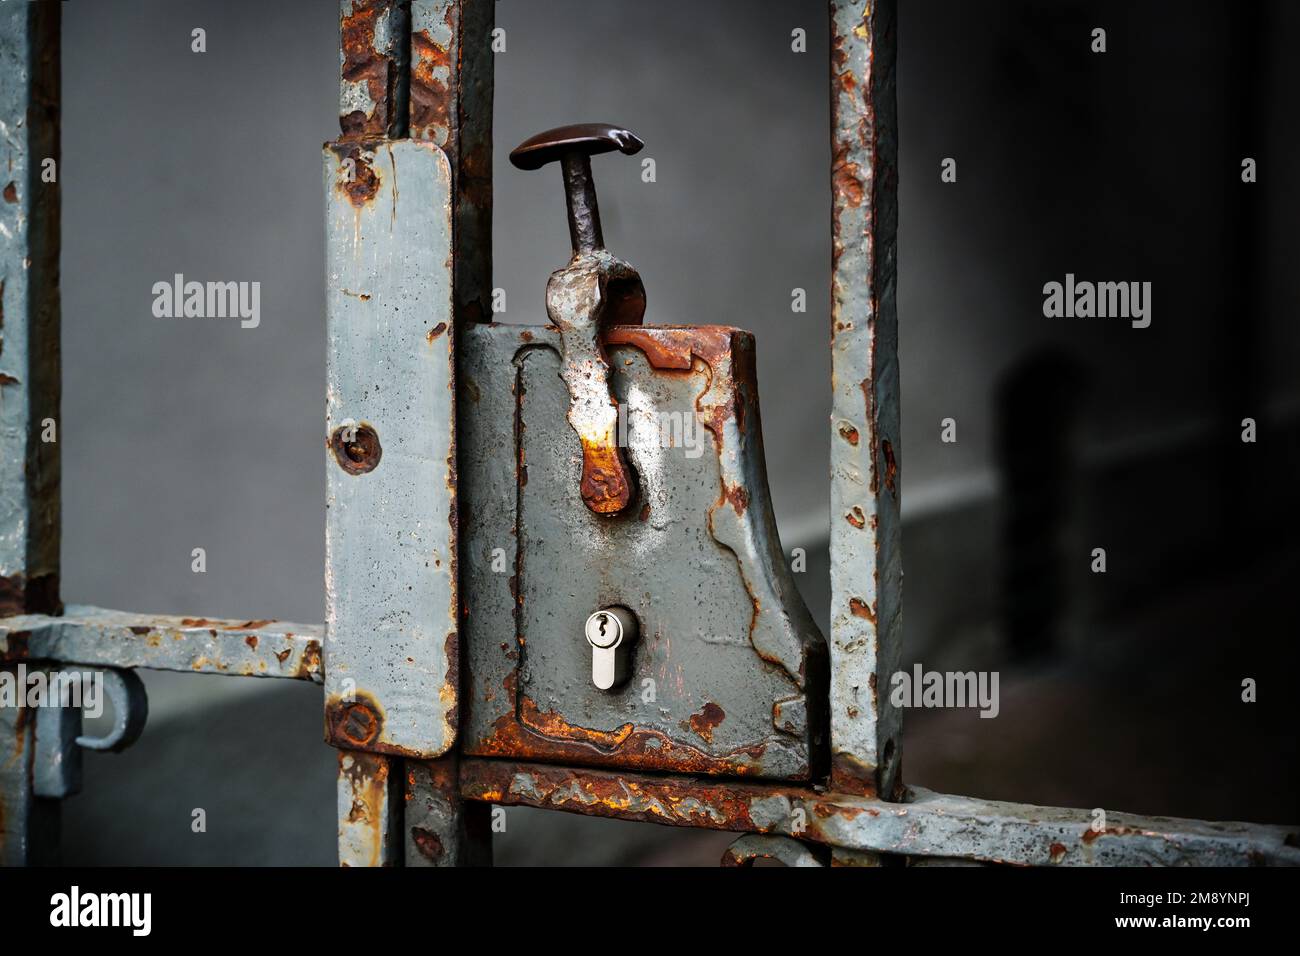 Nostálgica cerradura de puerta oxidada con un cilindro de cerradura moderno en una rejilla de entrada de metal, espacio de copia en el fondo oscuro, enfoque seleccionado Foto de stock